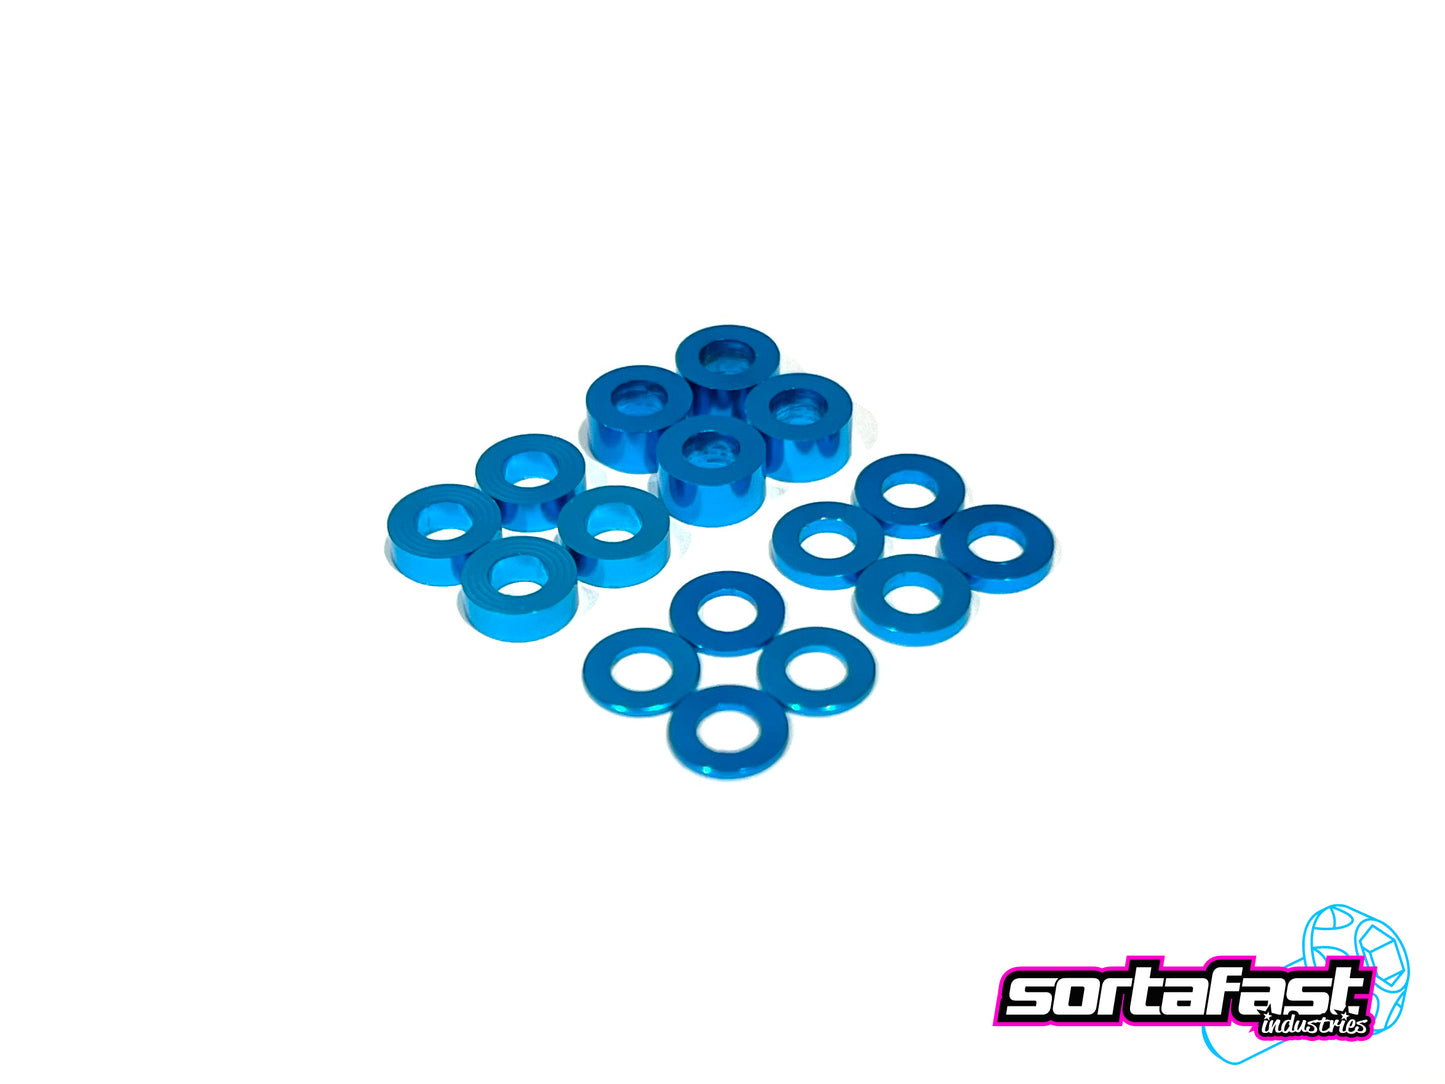 Sortafast Aluminum Shims - 3x6 Assortment - Bright Blue